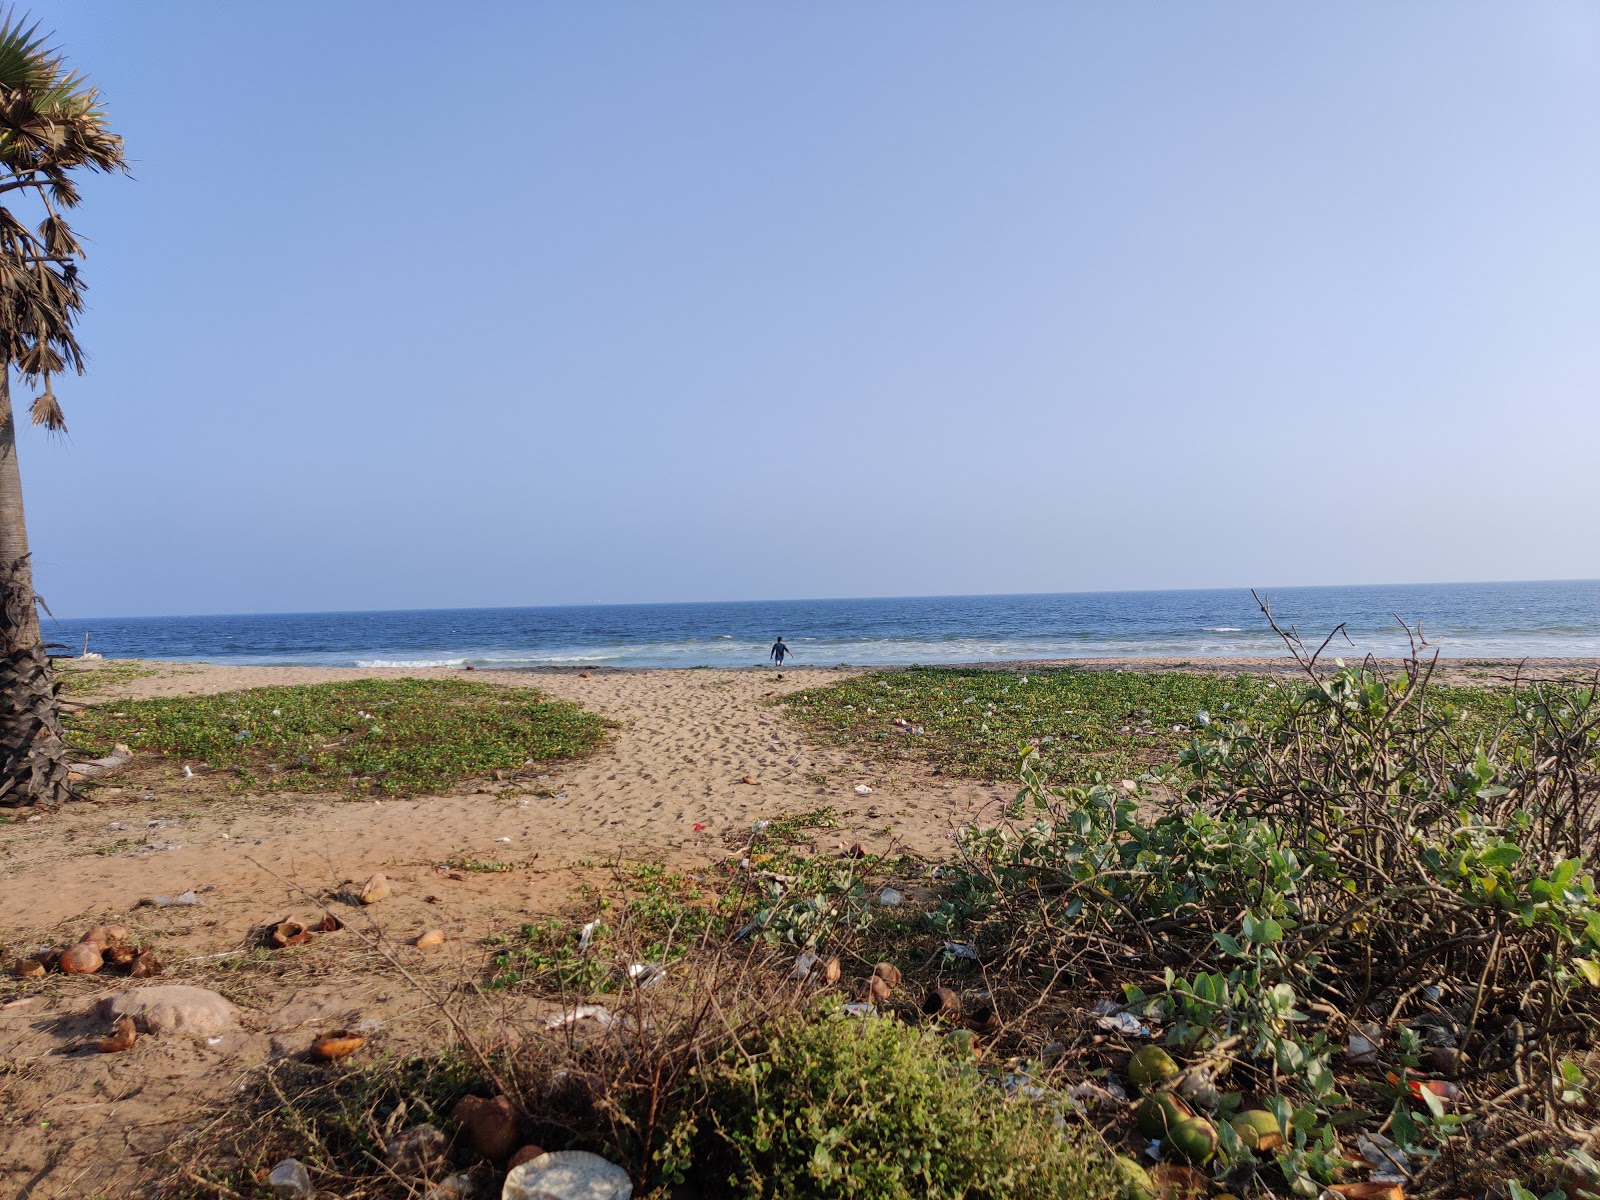 Foto af Yarada Beach - populært sted blandt afslapningskendere